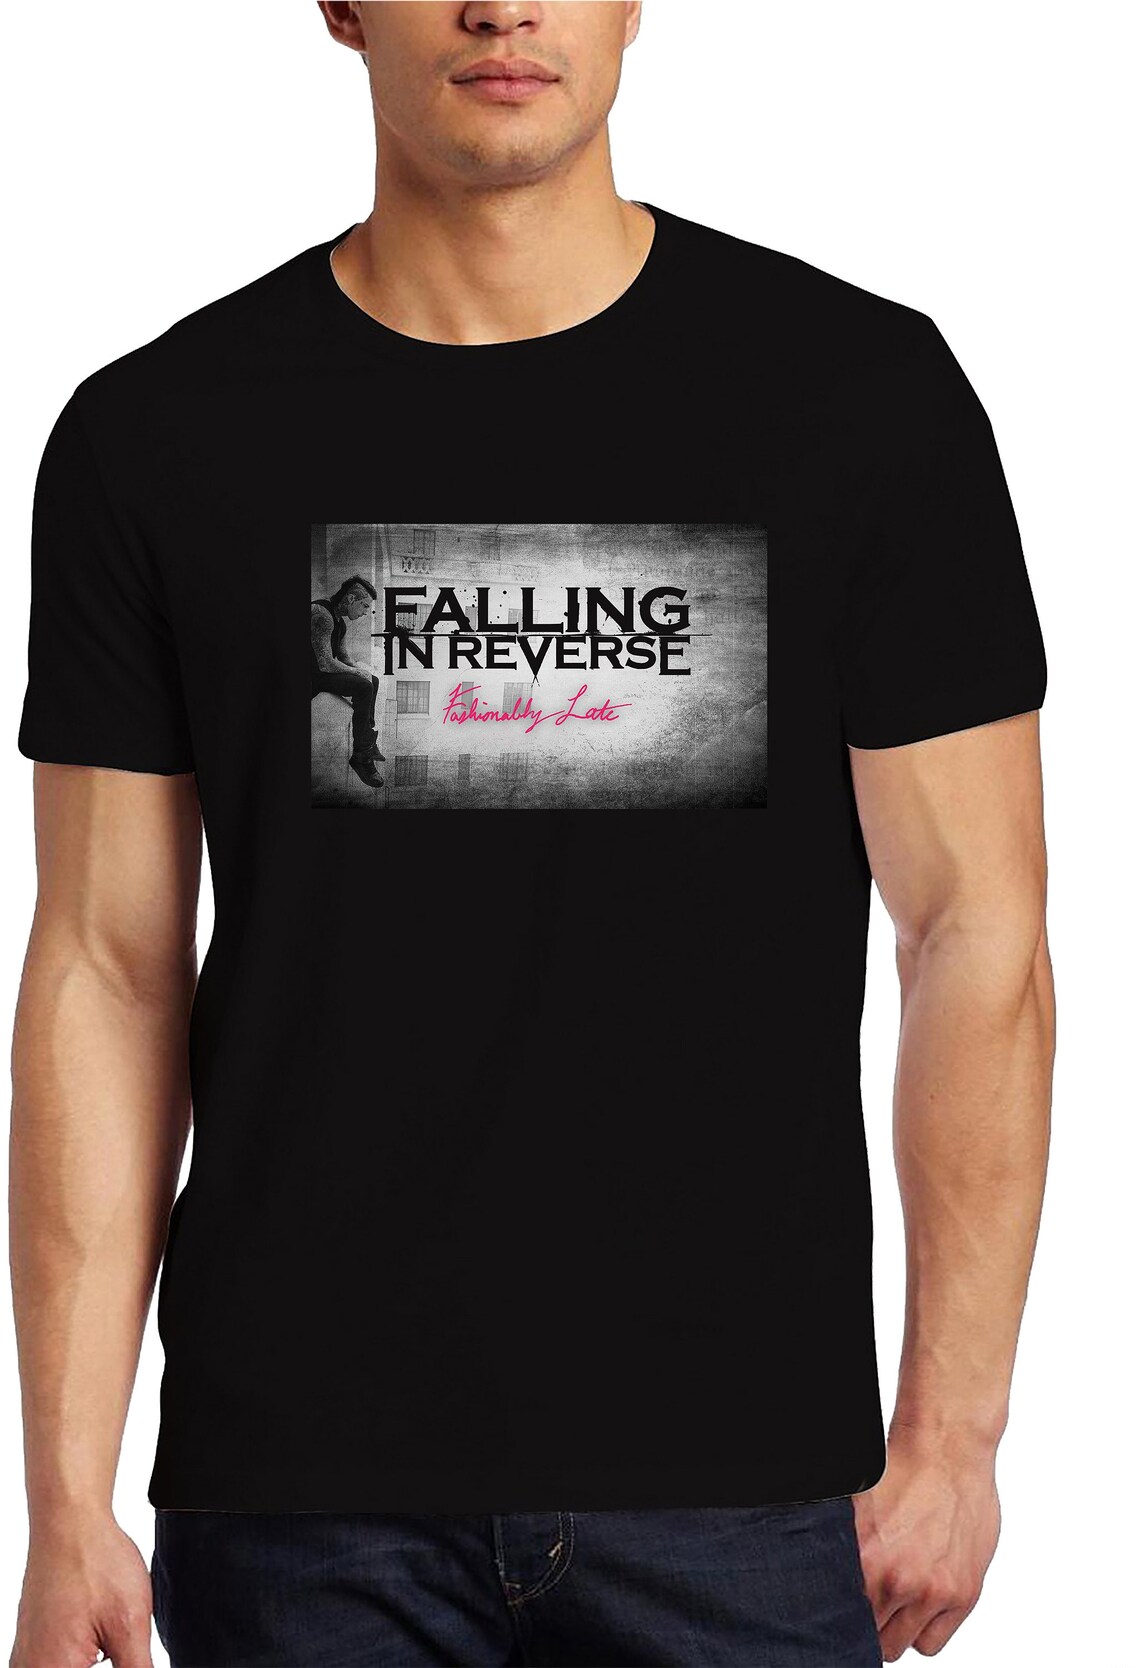 Falling in Reverse T-Shirt | Etsy